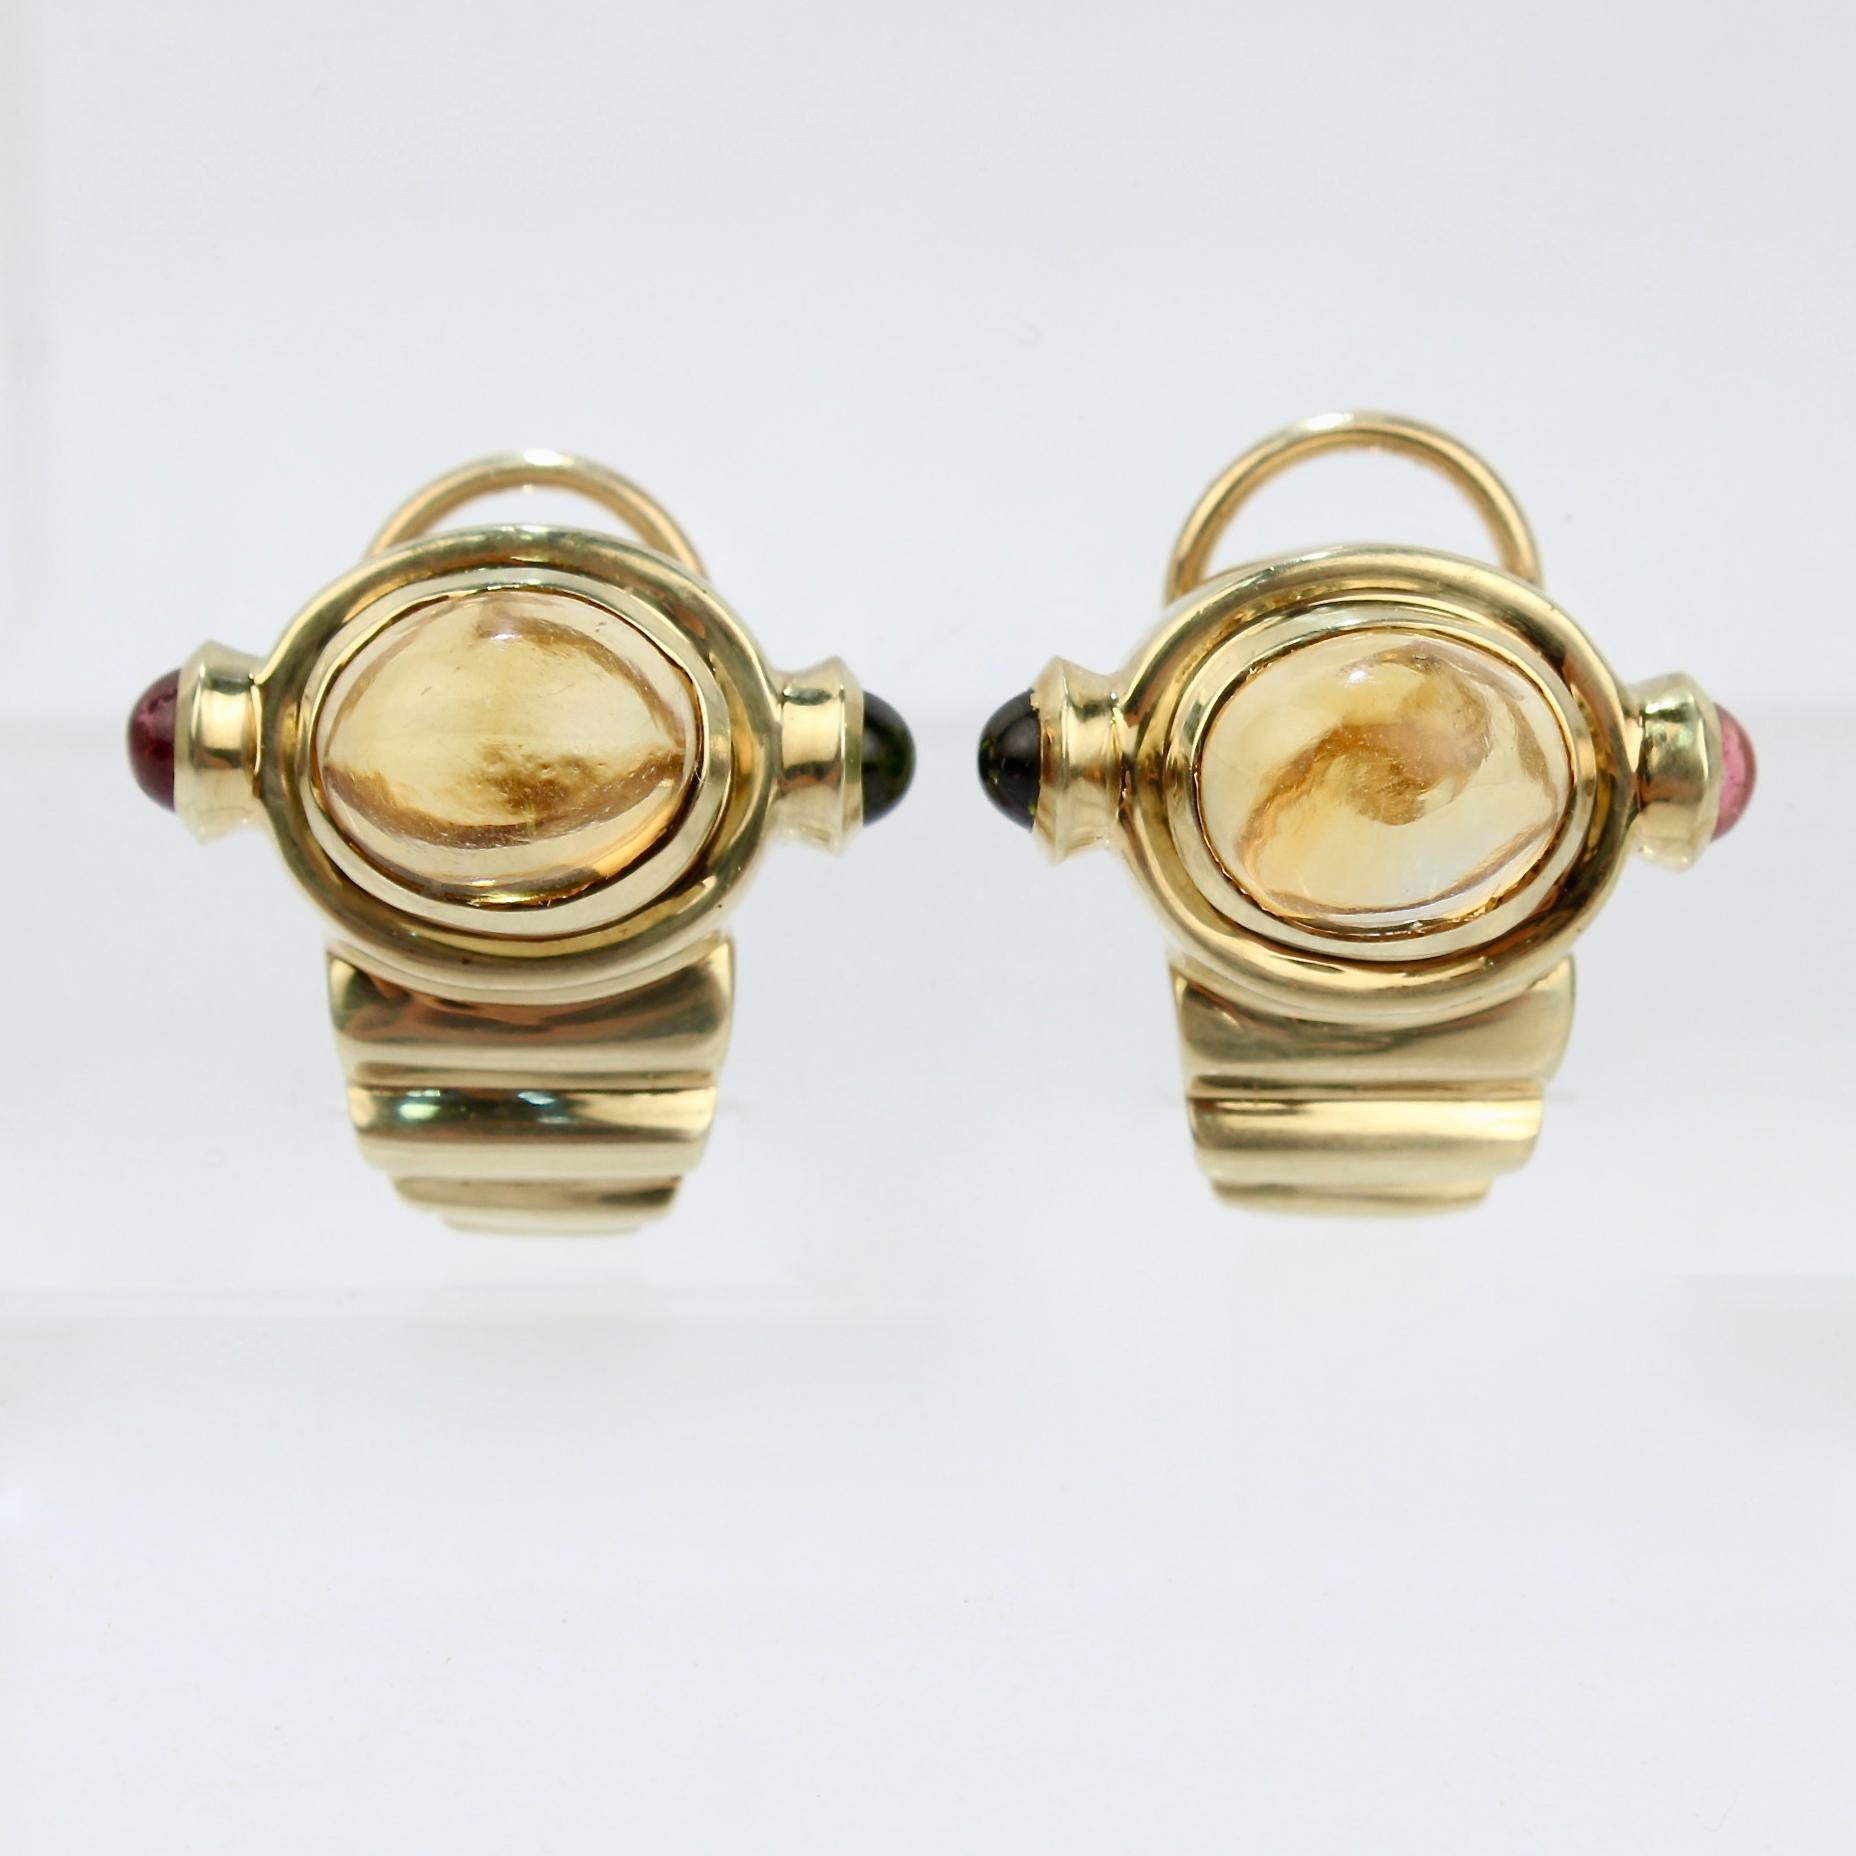 Ein Paar Retro-Edelsteinohrringe aus 14 Karat Gold.

In der Mitte der Ohrringe befindet sich ein Citrin-Cabochon, der von einem rosafarbenen und einem grünen Turmalin-Cabochon flankiert wird, die in die Lünette gefasst sind.  

Vier sich verjüngende